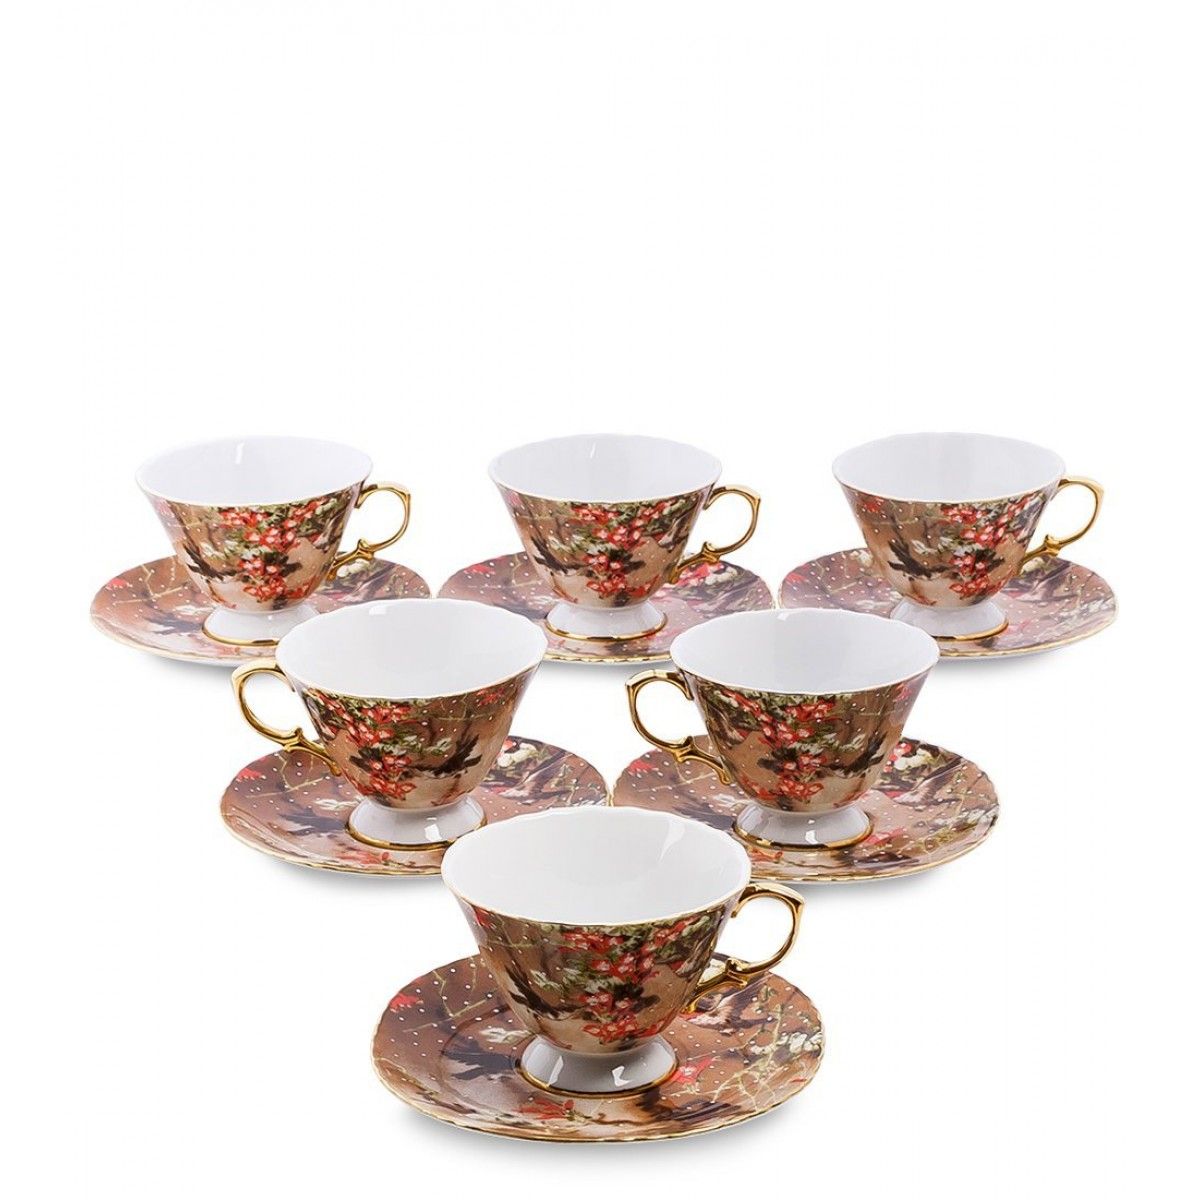 Сервиз из фарфора купить. Чайный набор на 6 персон Фиор де Парадис Pavone. Сервиз Dolce Vita из 57 предметов.